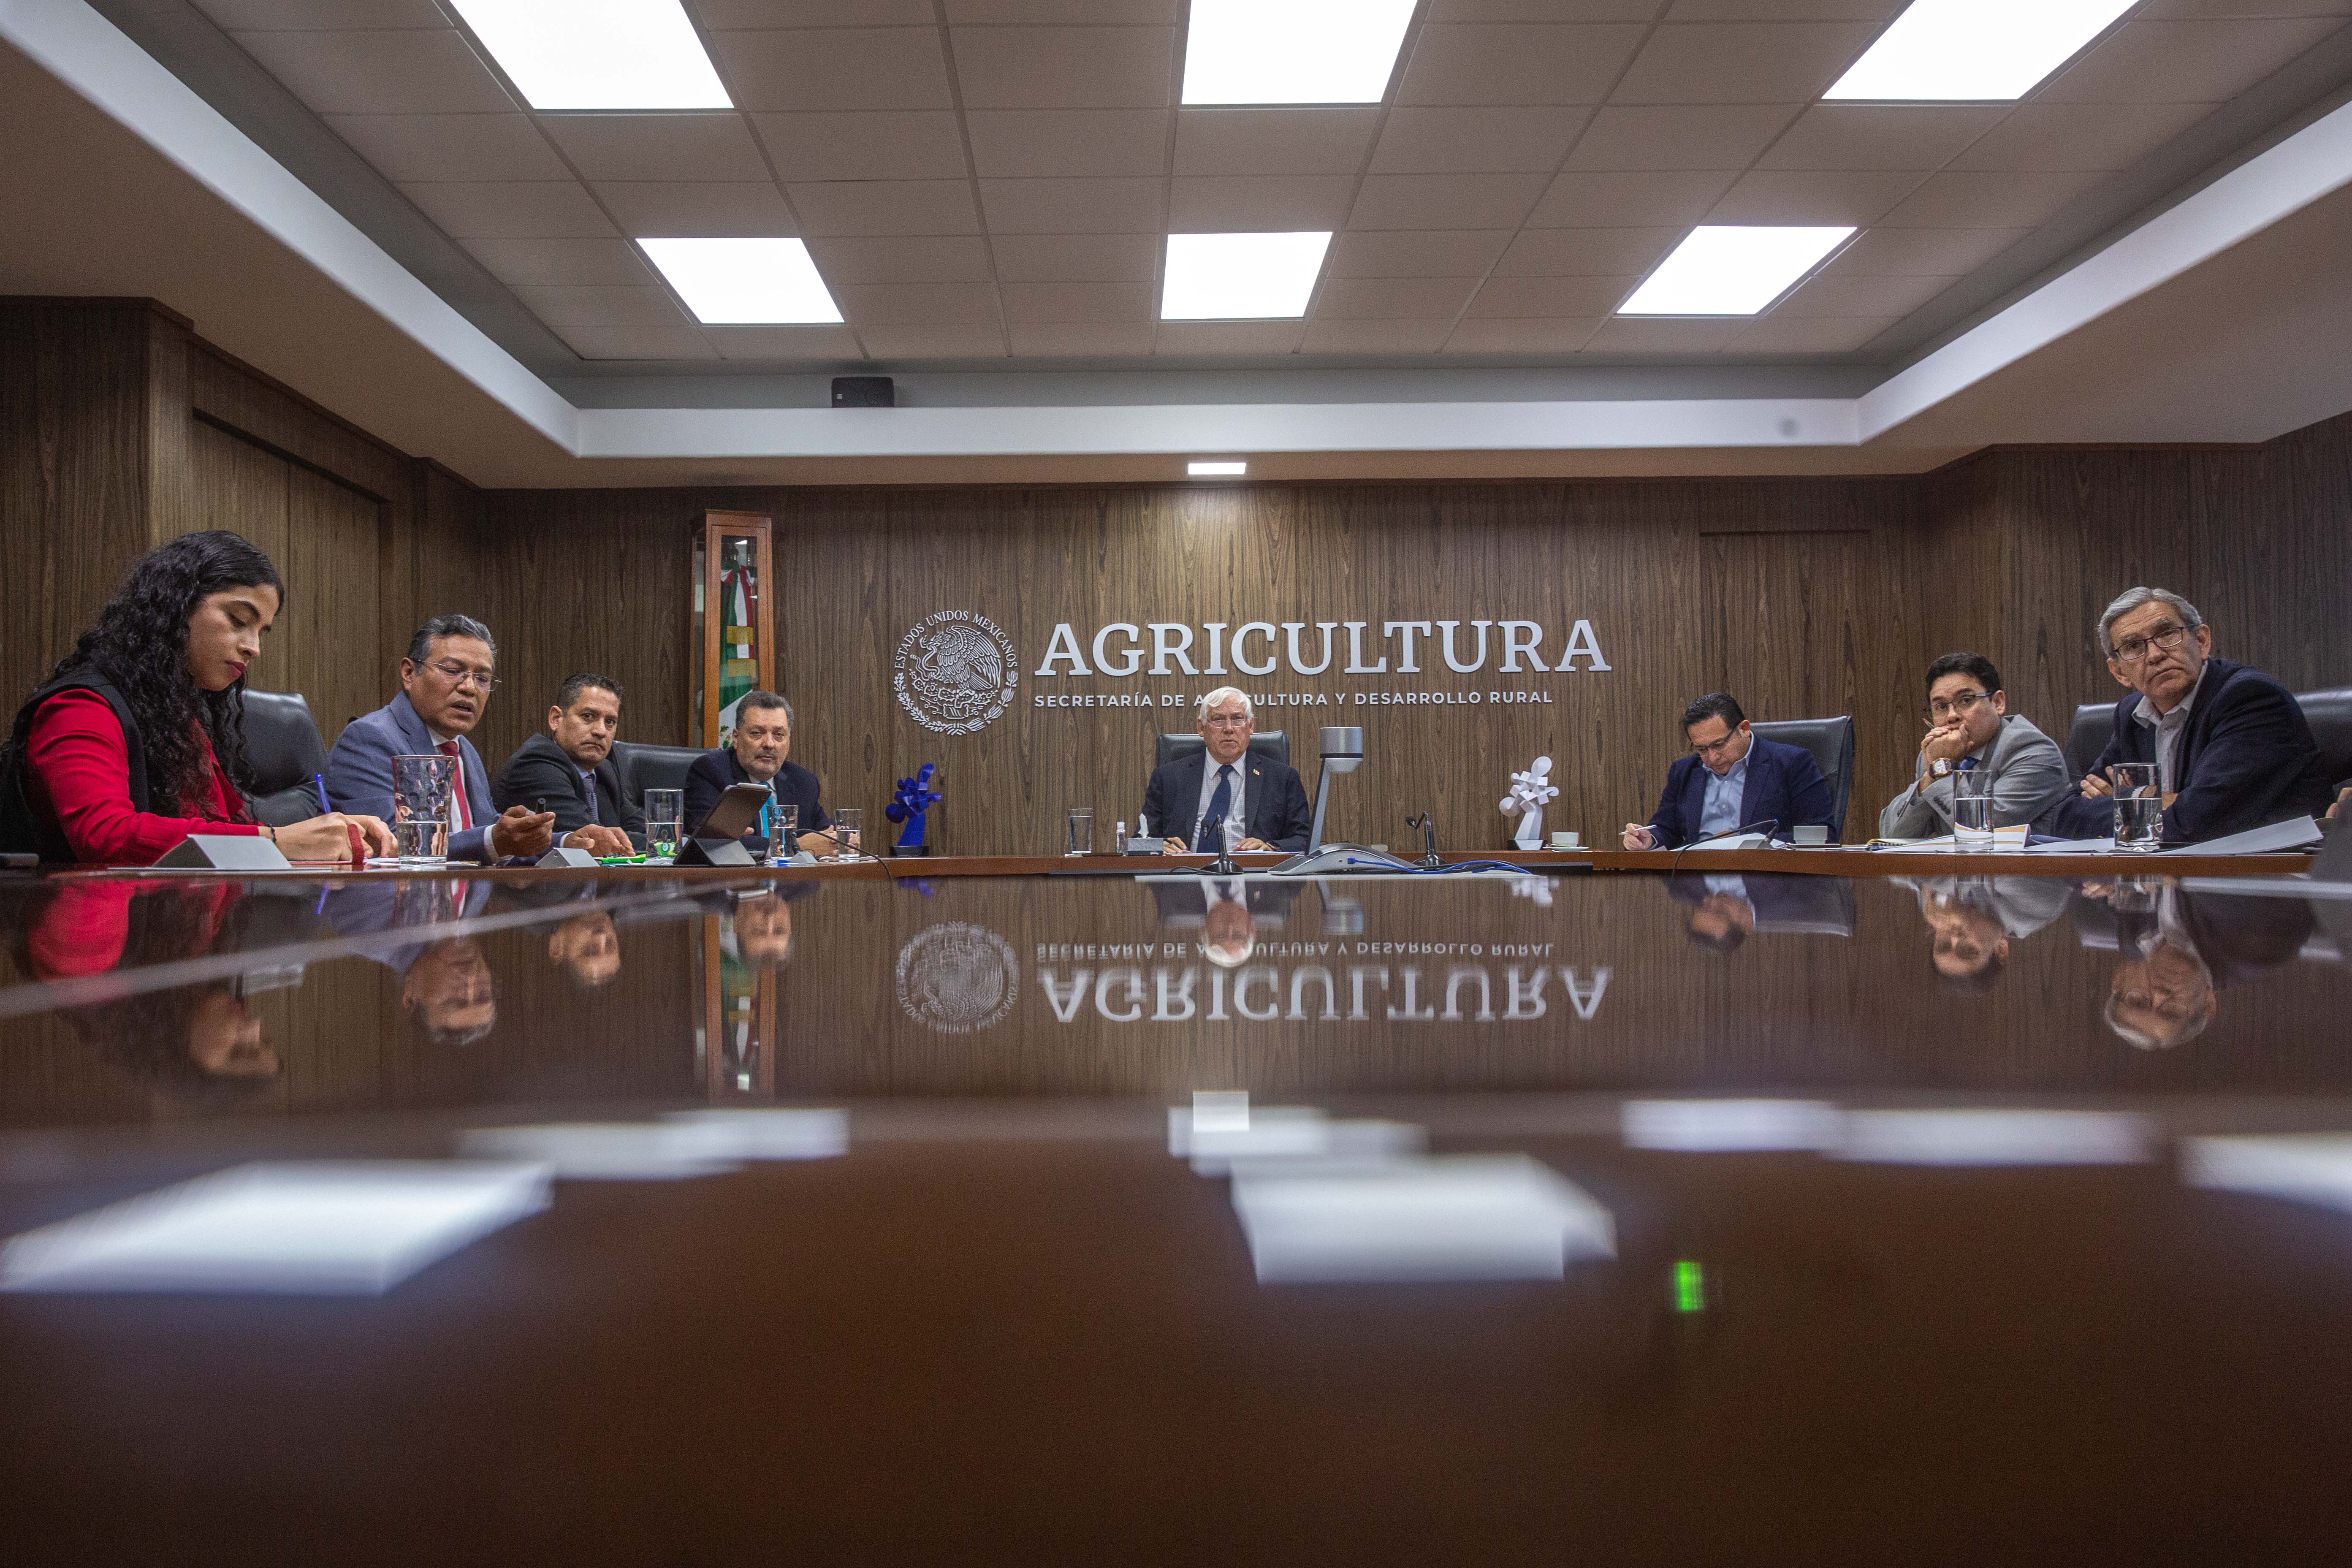 El titular de la Secretaría de Agricultura, Víctor Villalobos Arámbula, encabezando una reunión en sala de juntas de la dependencia junto con gobiernos estatales y el sector productivo nacional de cítricos